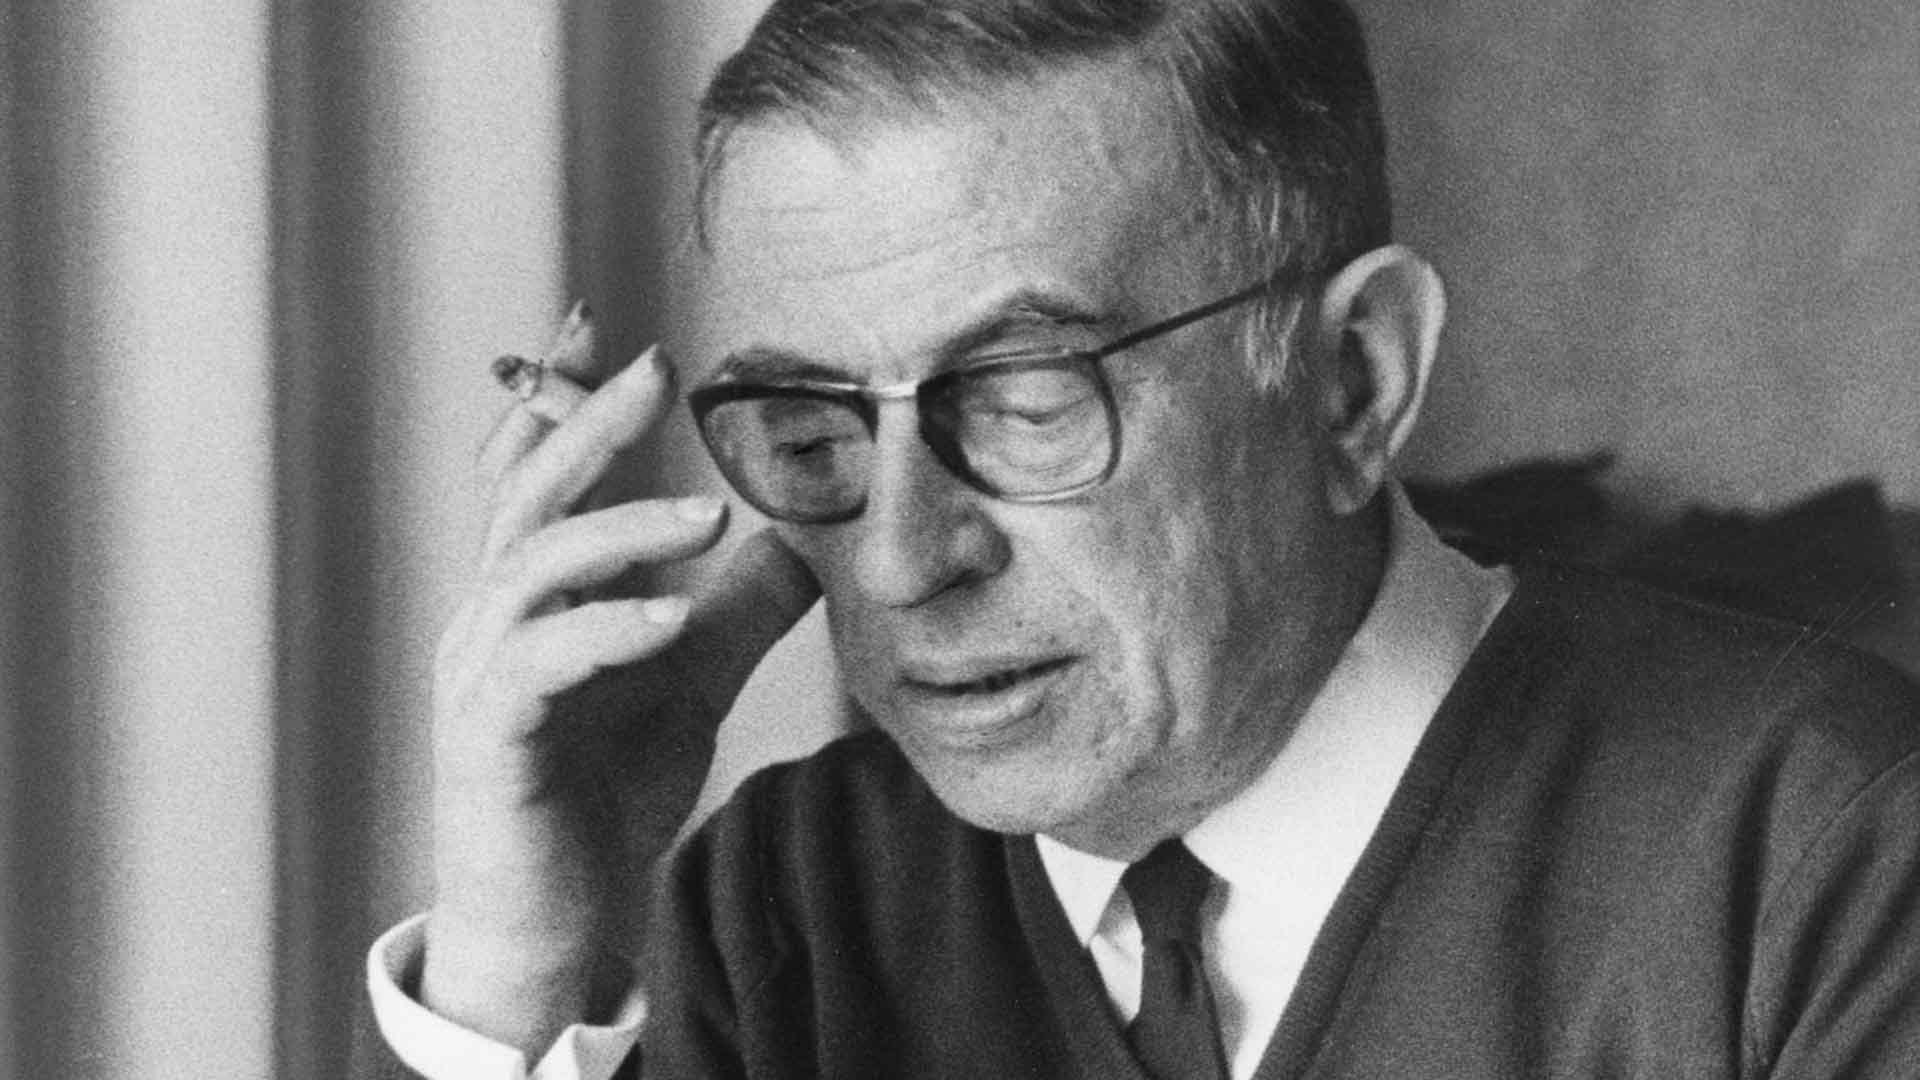 Jean-Paul Sartre, breve ritratto del filosofo contro l'oppressione e l'ingiustizia